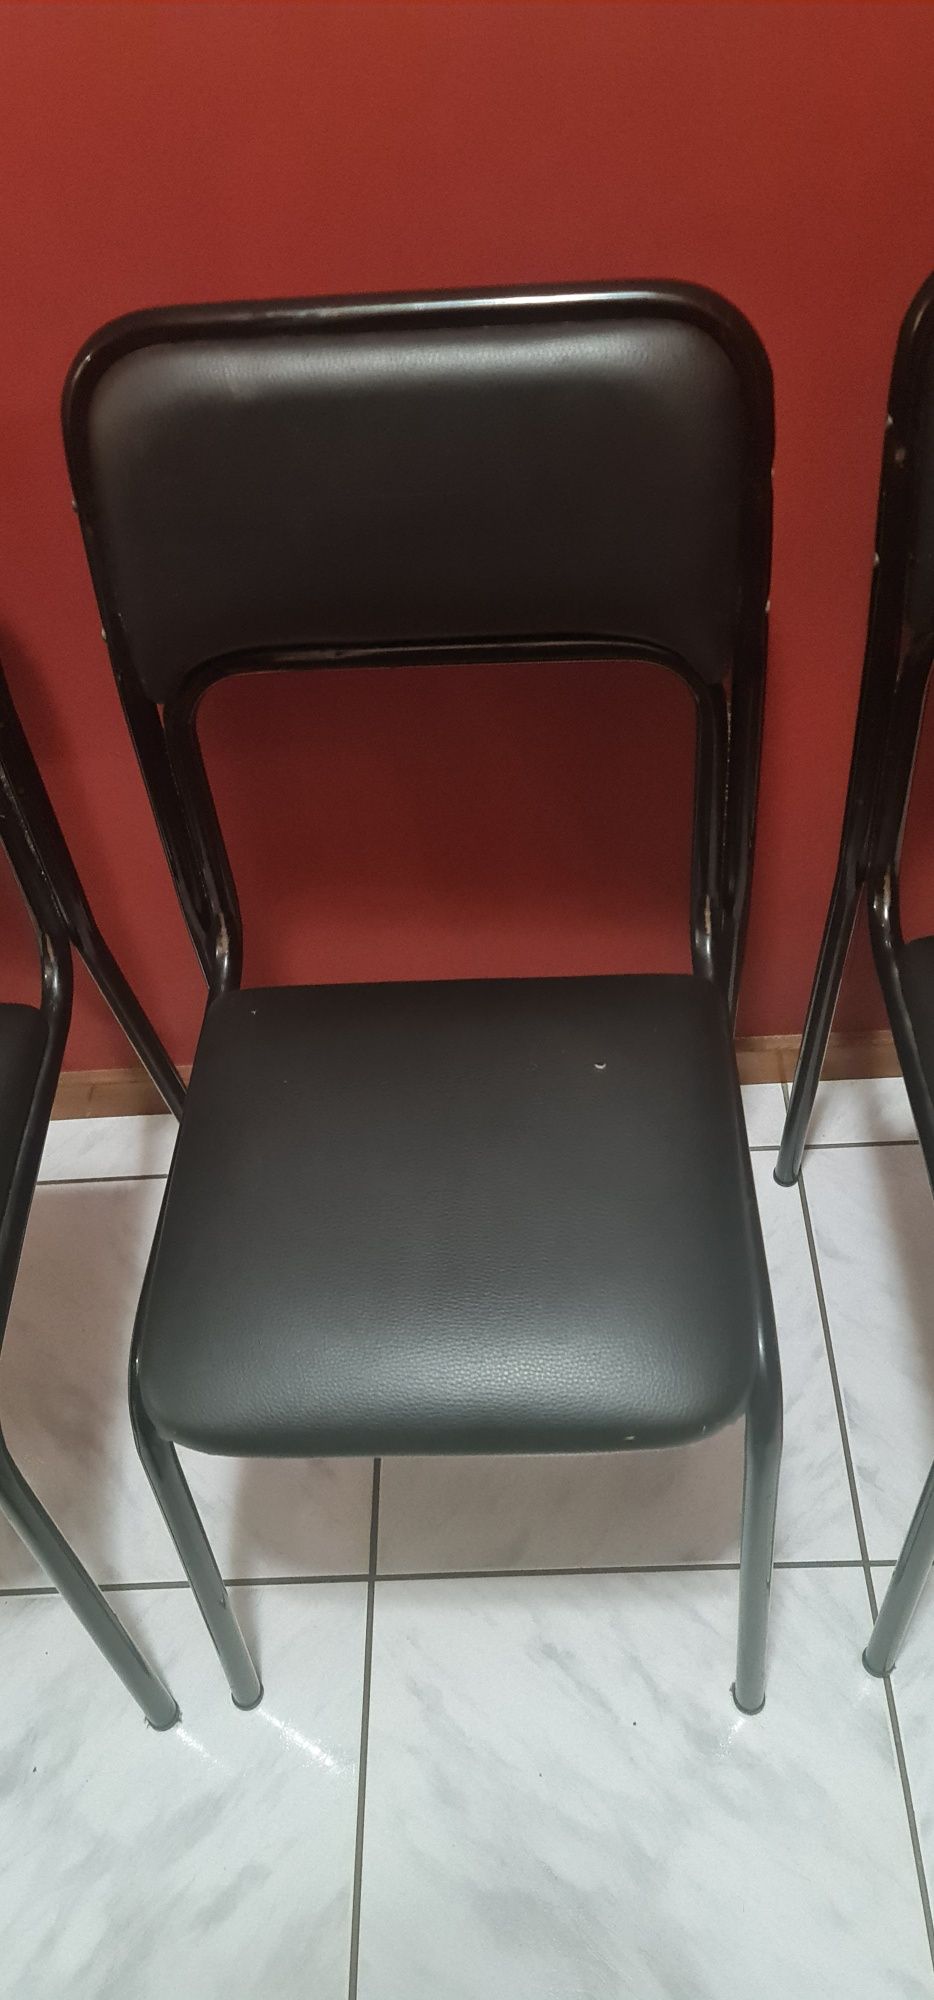 4 Cadeiras usadas